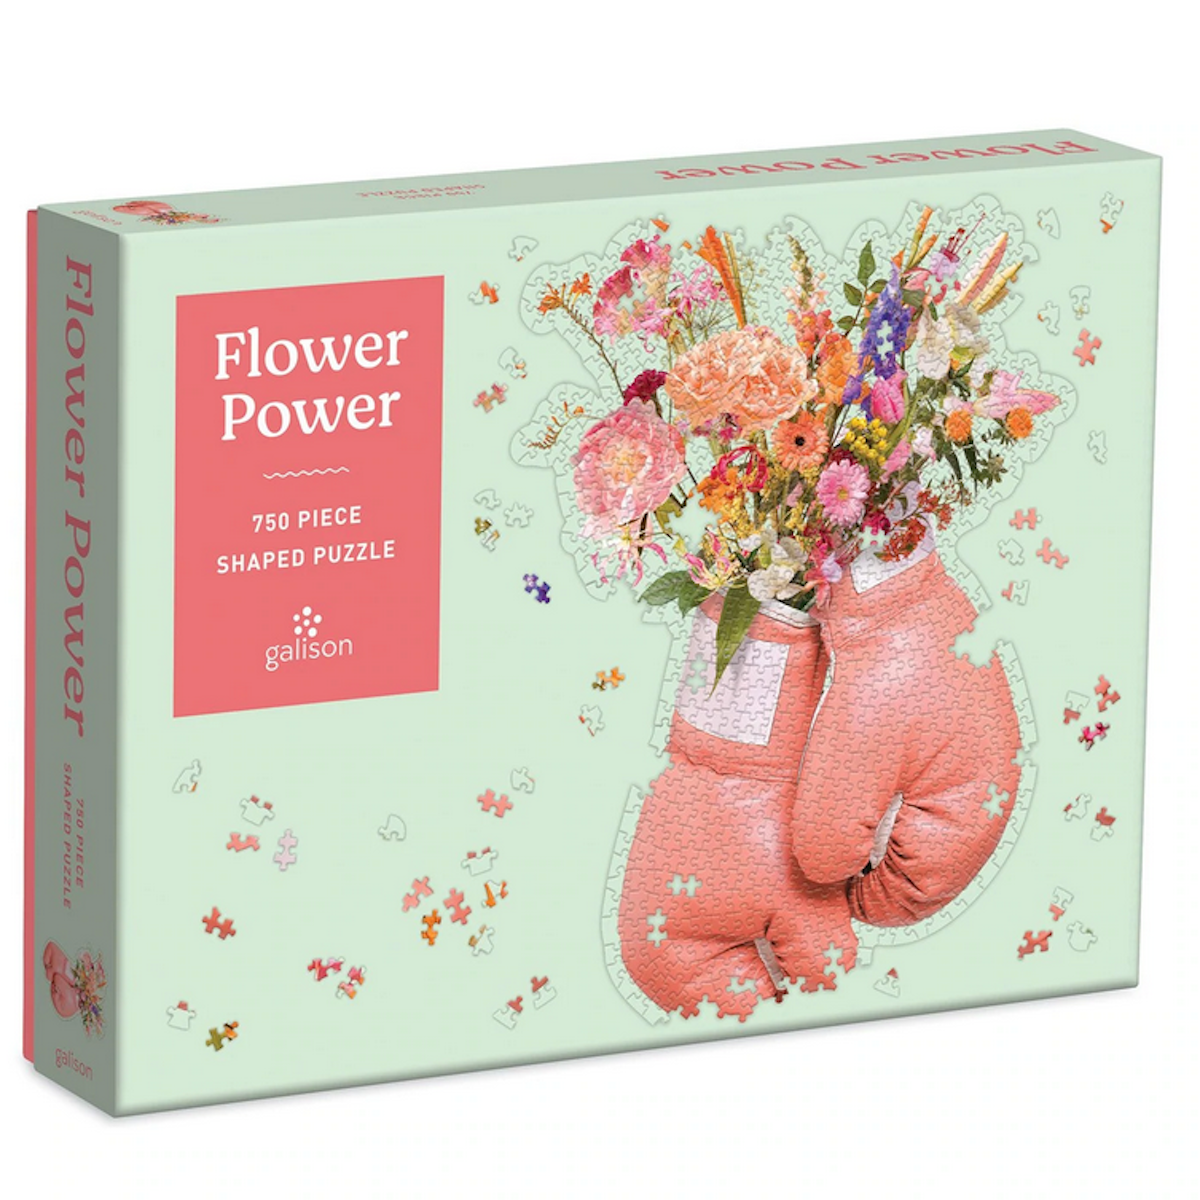 Flower Power Shaped Galison Puzzle 750pcs